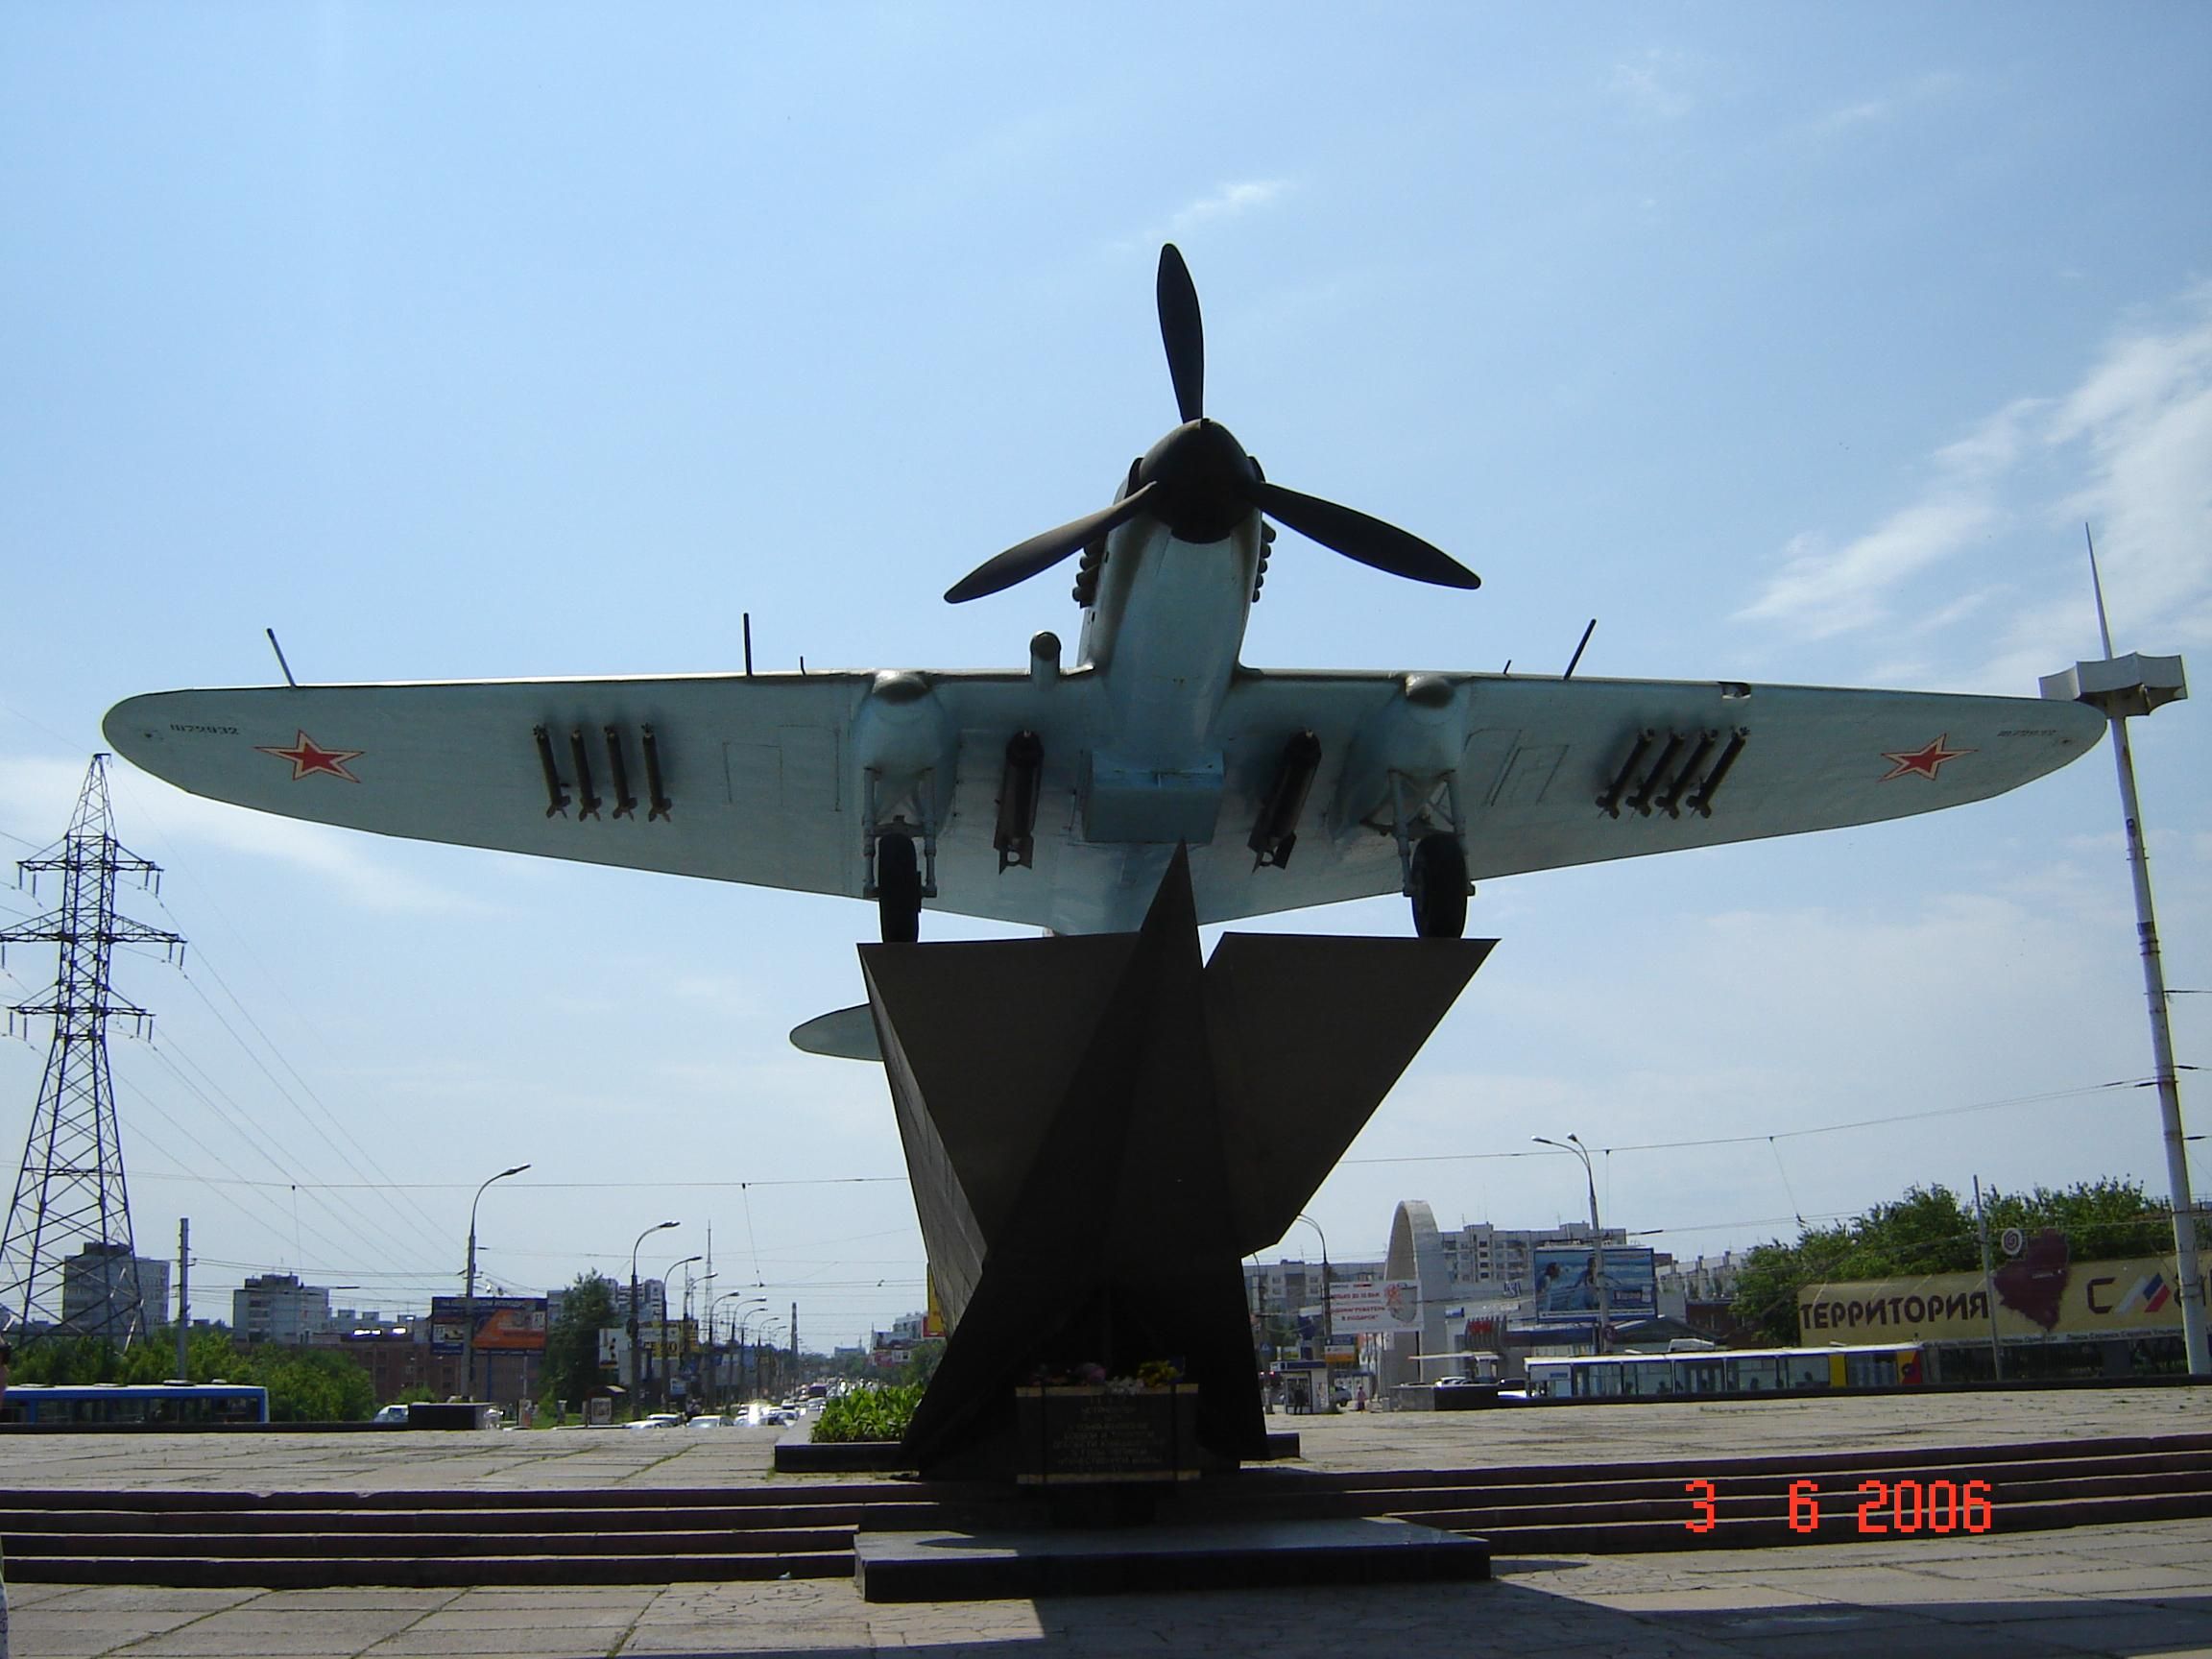 Самара. Памятник знаменитому ИЛ-2. Июнь 2006 г. (Насколько я знаю, таких памятников всего 2 на всю Россию. Я впервые в своей жизни увидел самолёт, на котором воевал мой отец во время войны. Этот снимок мне особенно дорог).